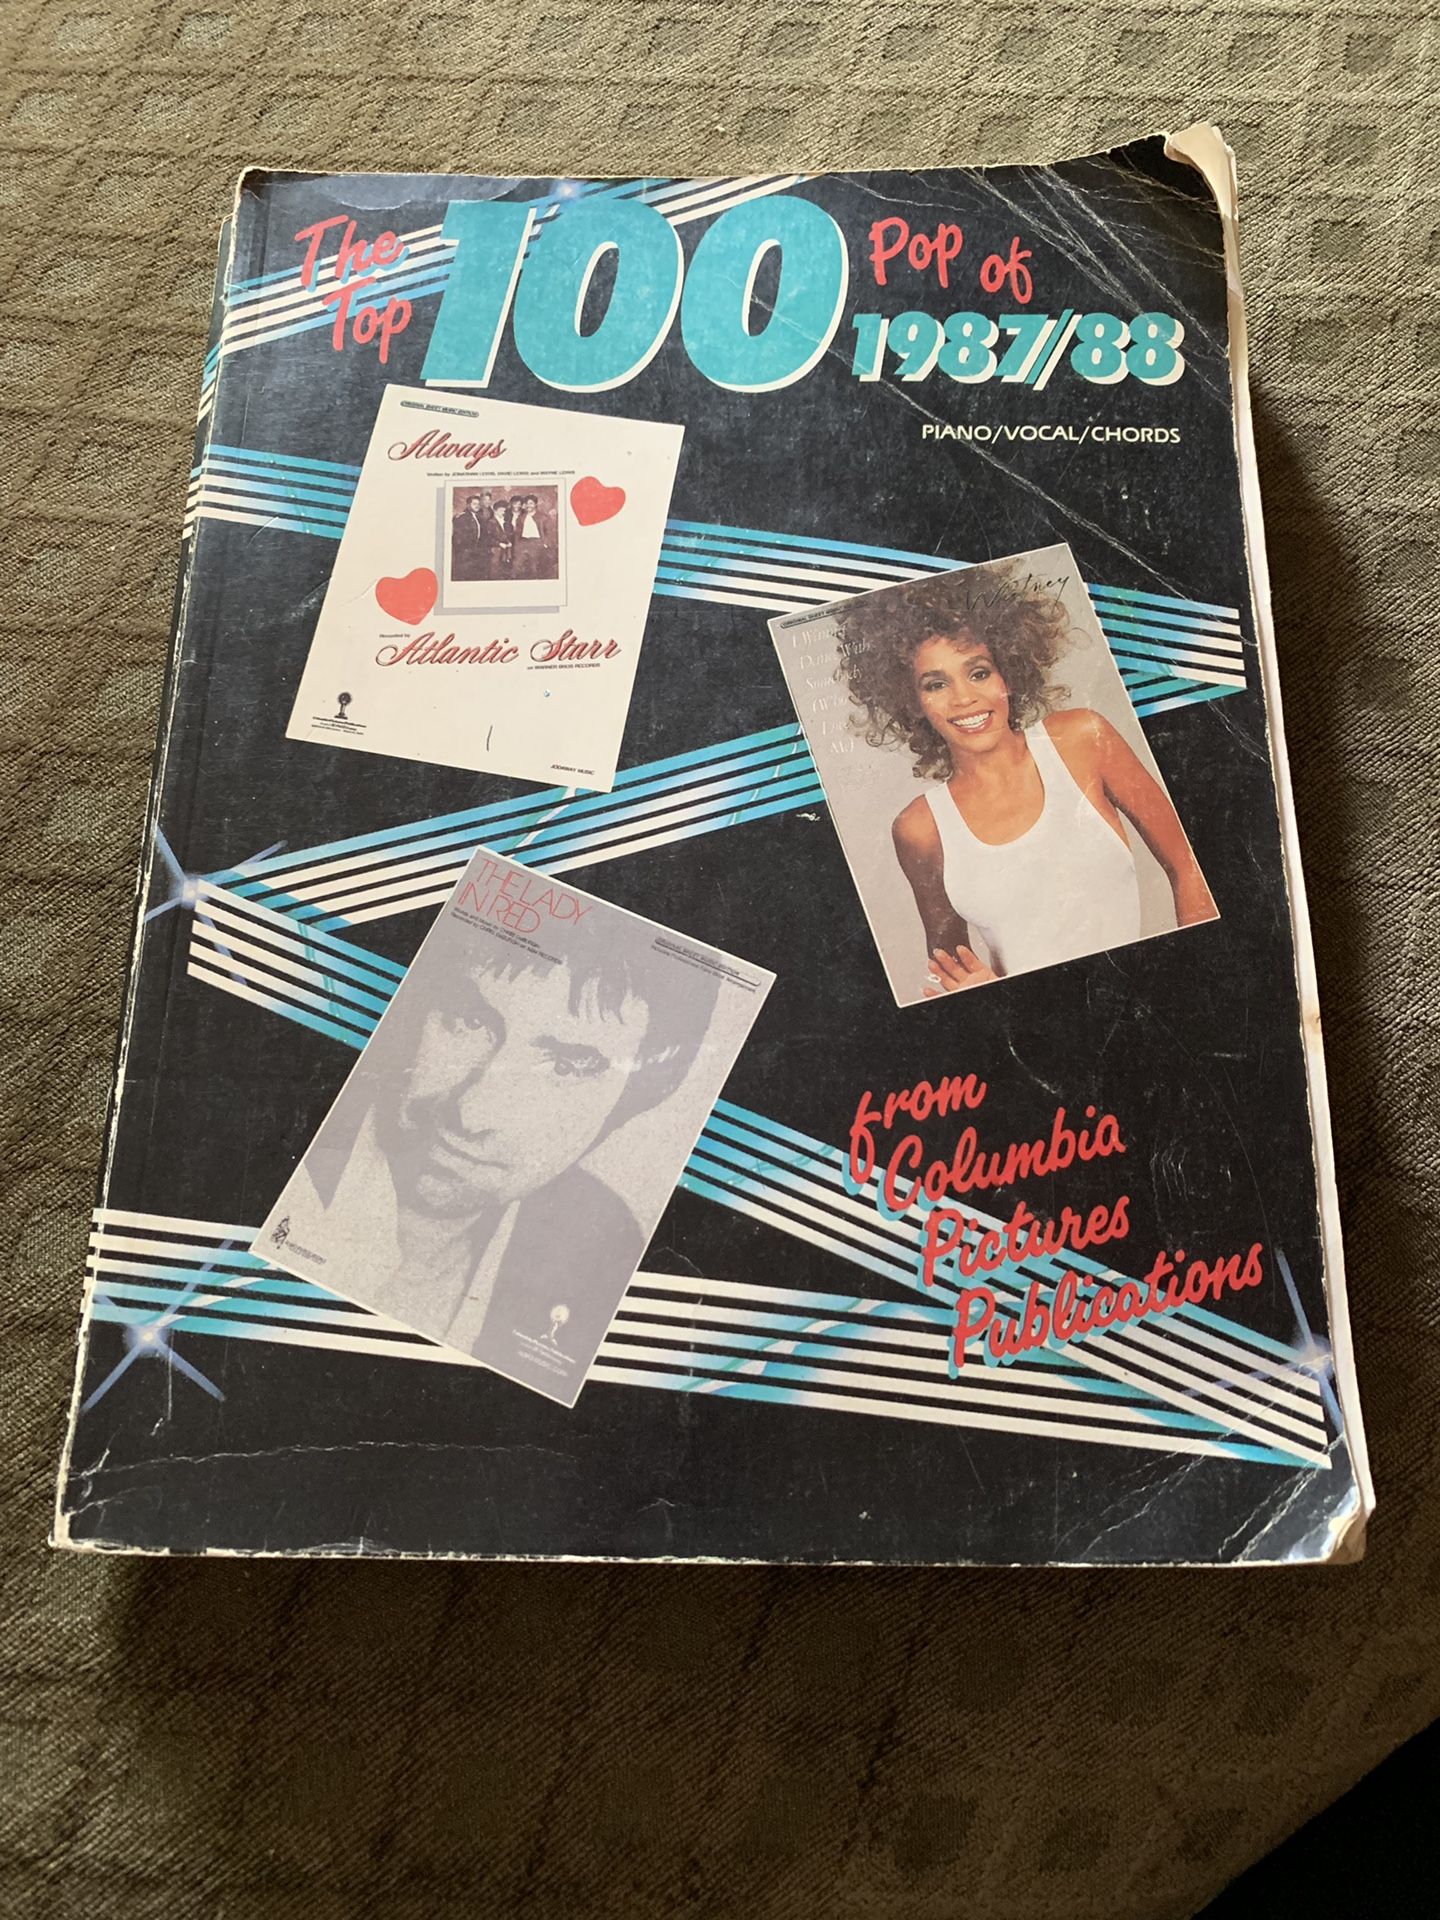 1987/88 top 100 pop songbook